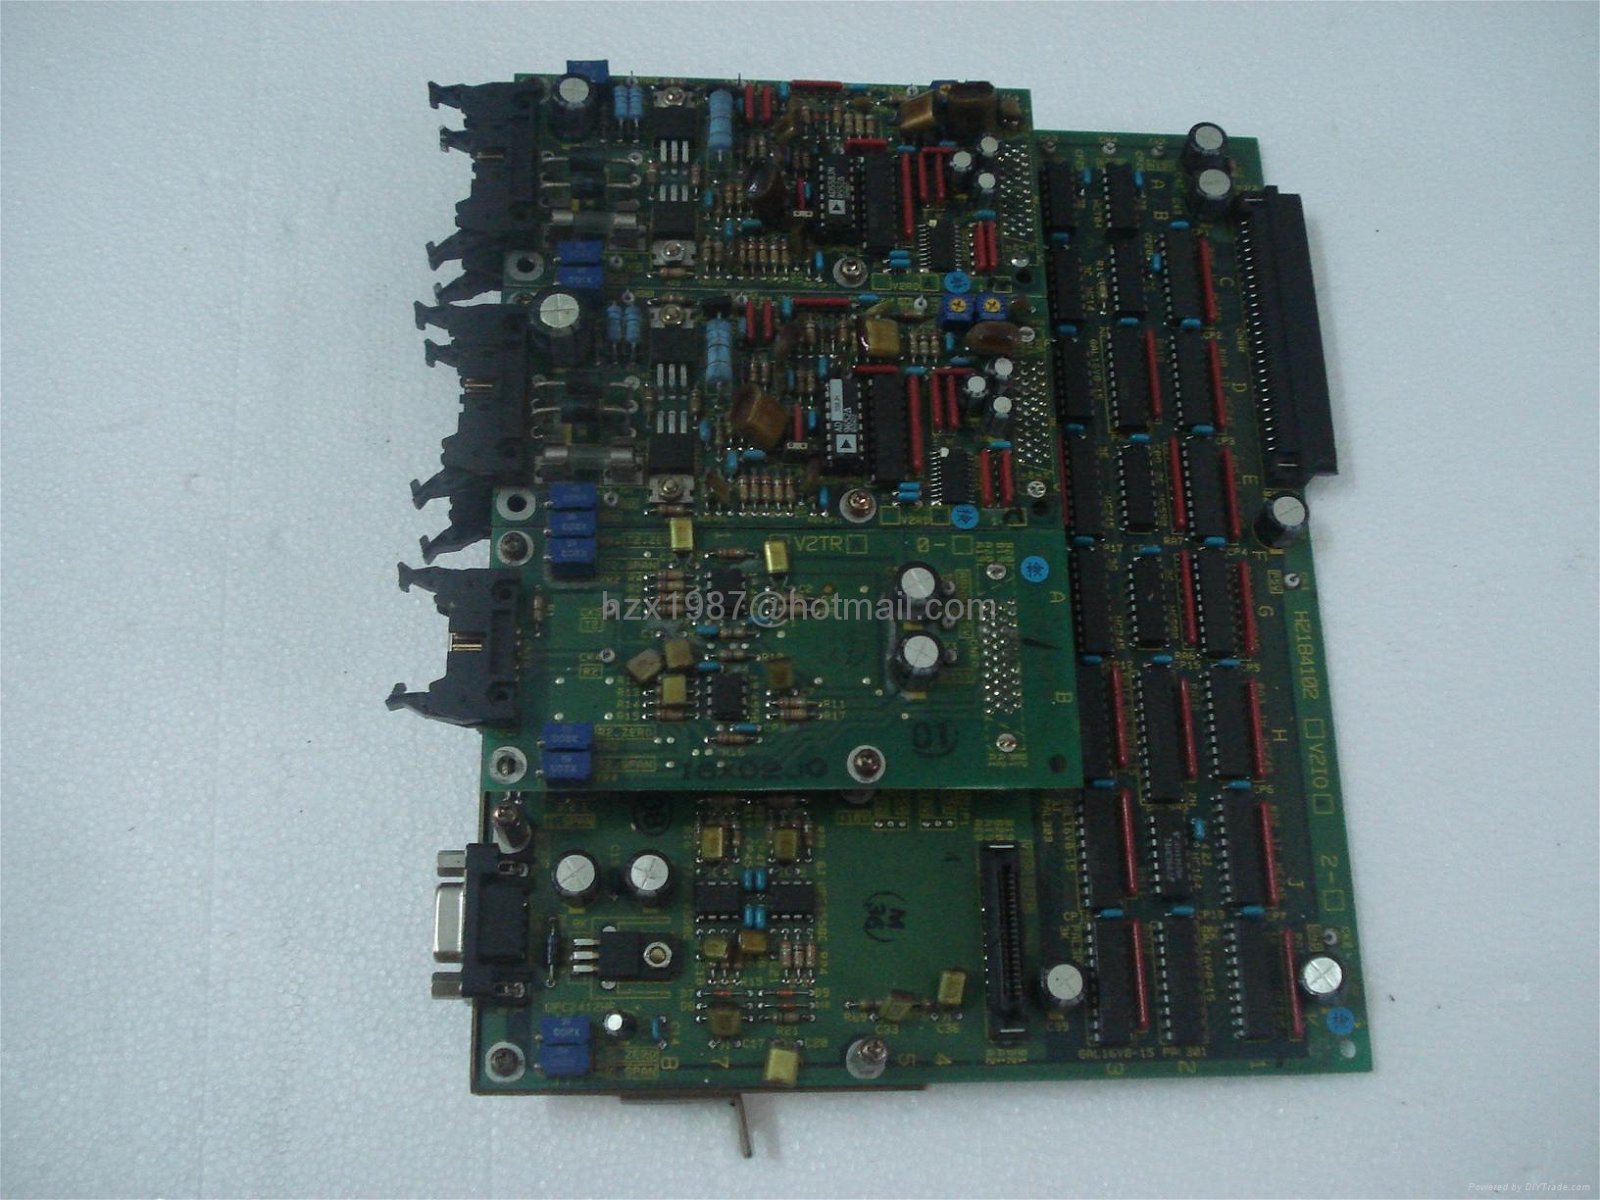 SELL Toshiba machine board ,H2184332 ,H2218125 ,H2184191 ,H2184371,private price 5